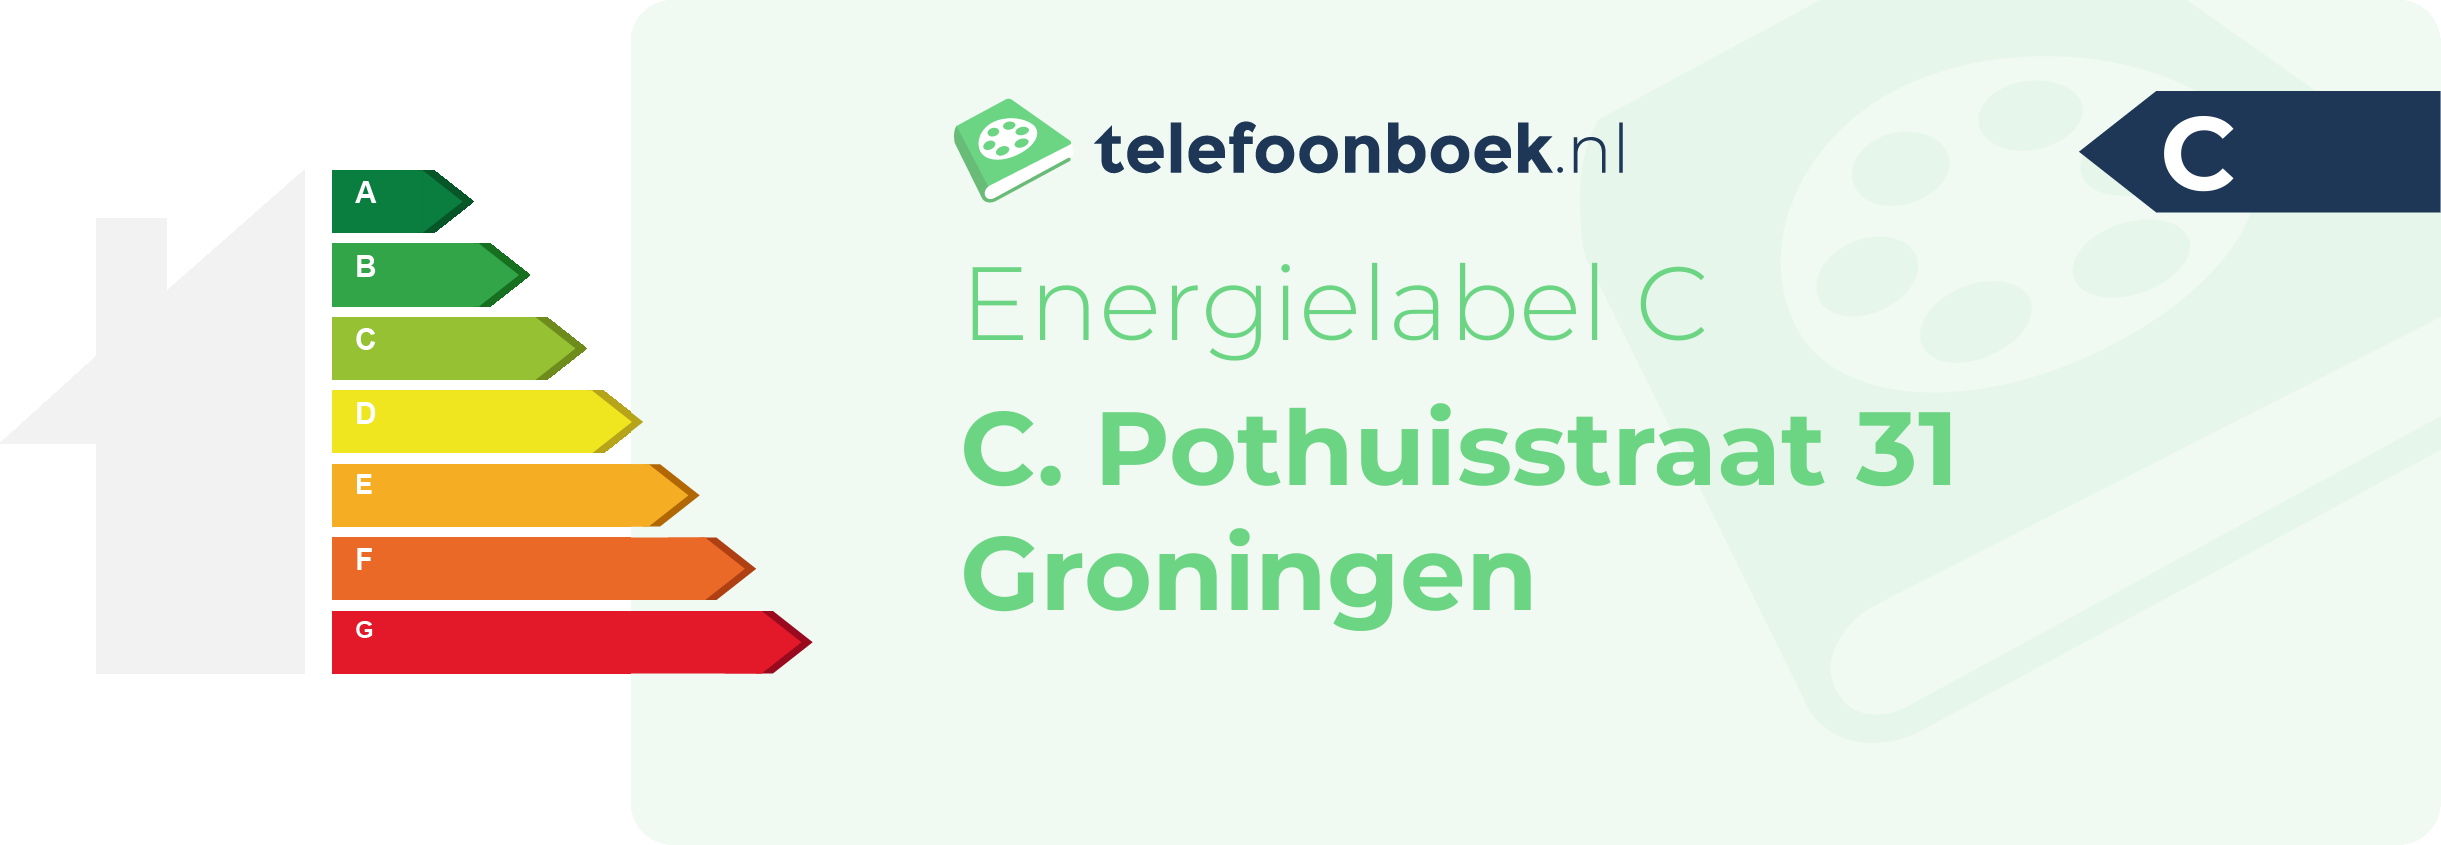 Energielabel C. Pothuisstraat 31 Groningen